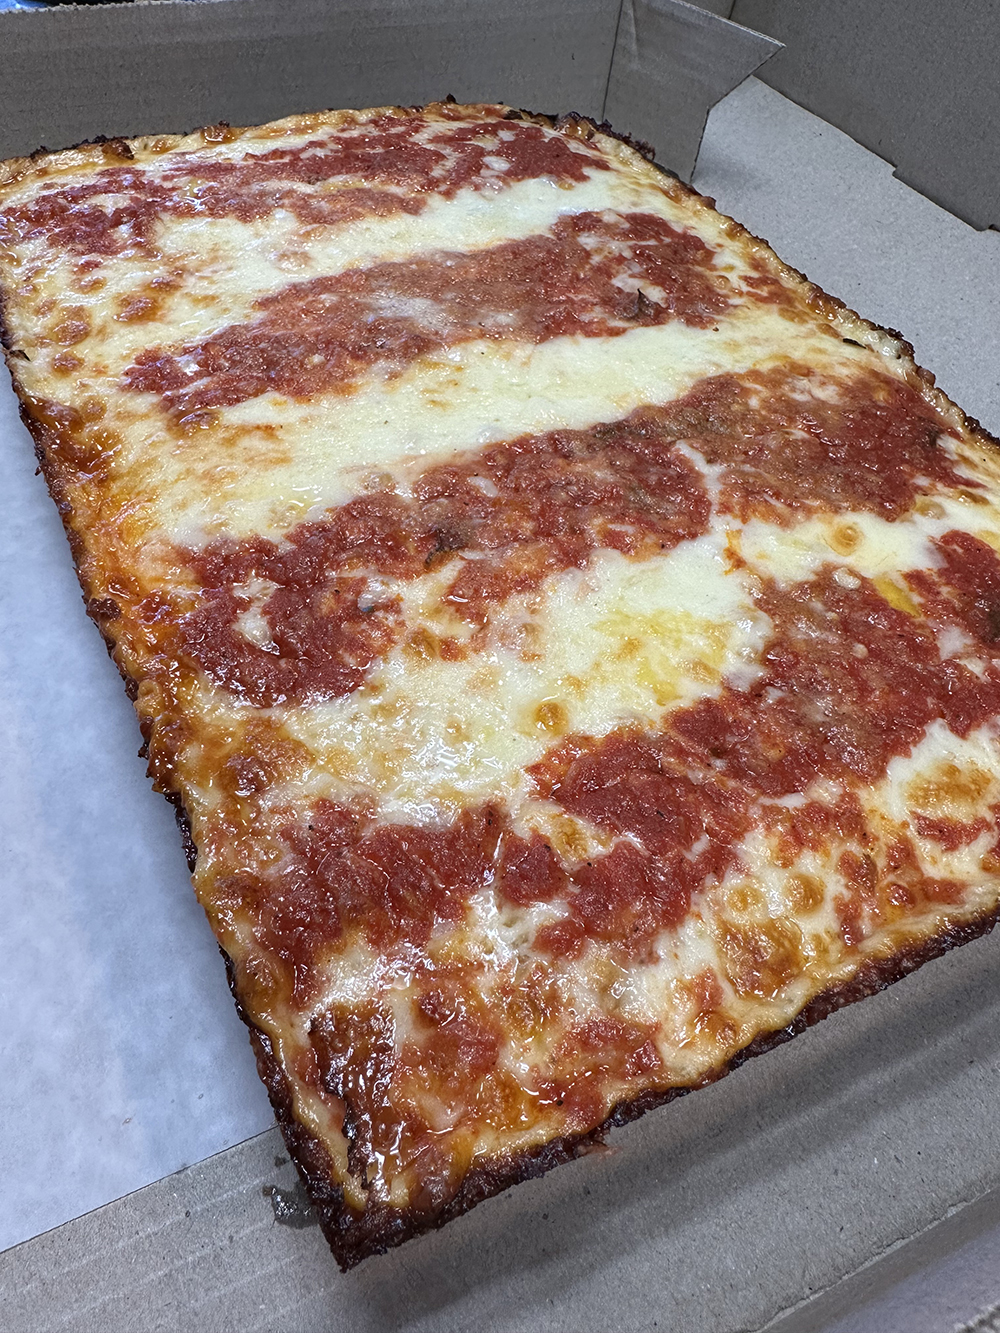 Detroit-Style Pizza